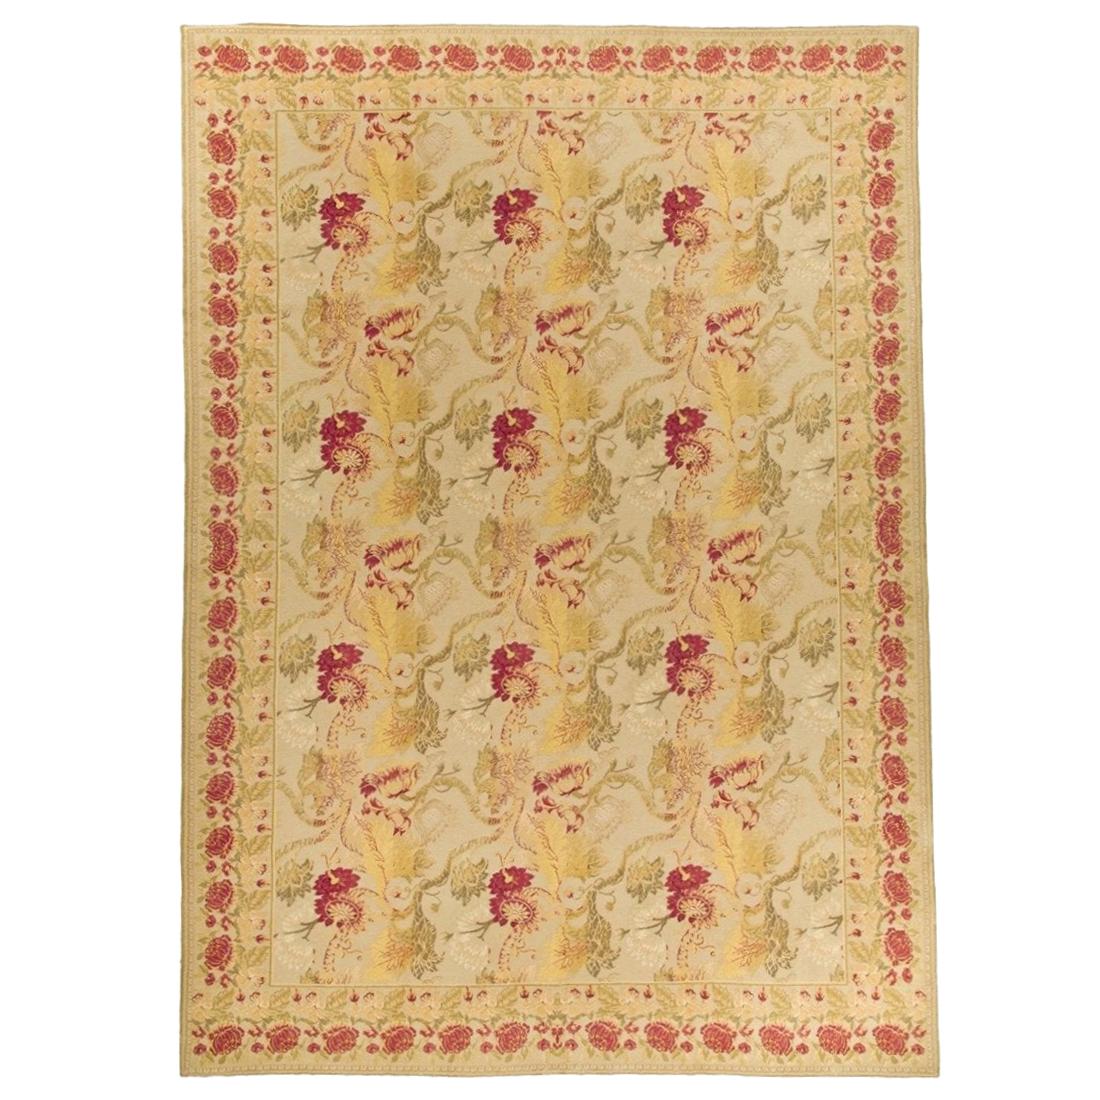 Handgewebter antiker Teppich aus Wolle  10'3 x 14'3 cm.